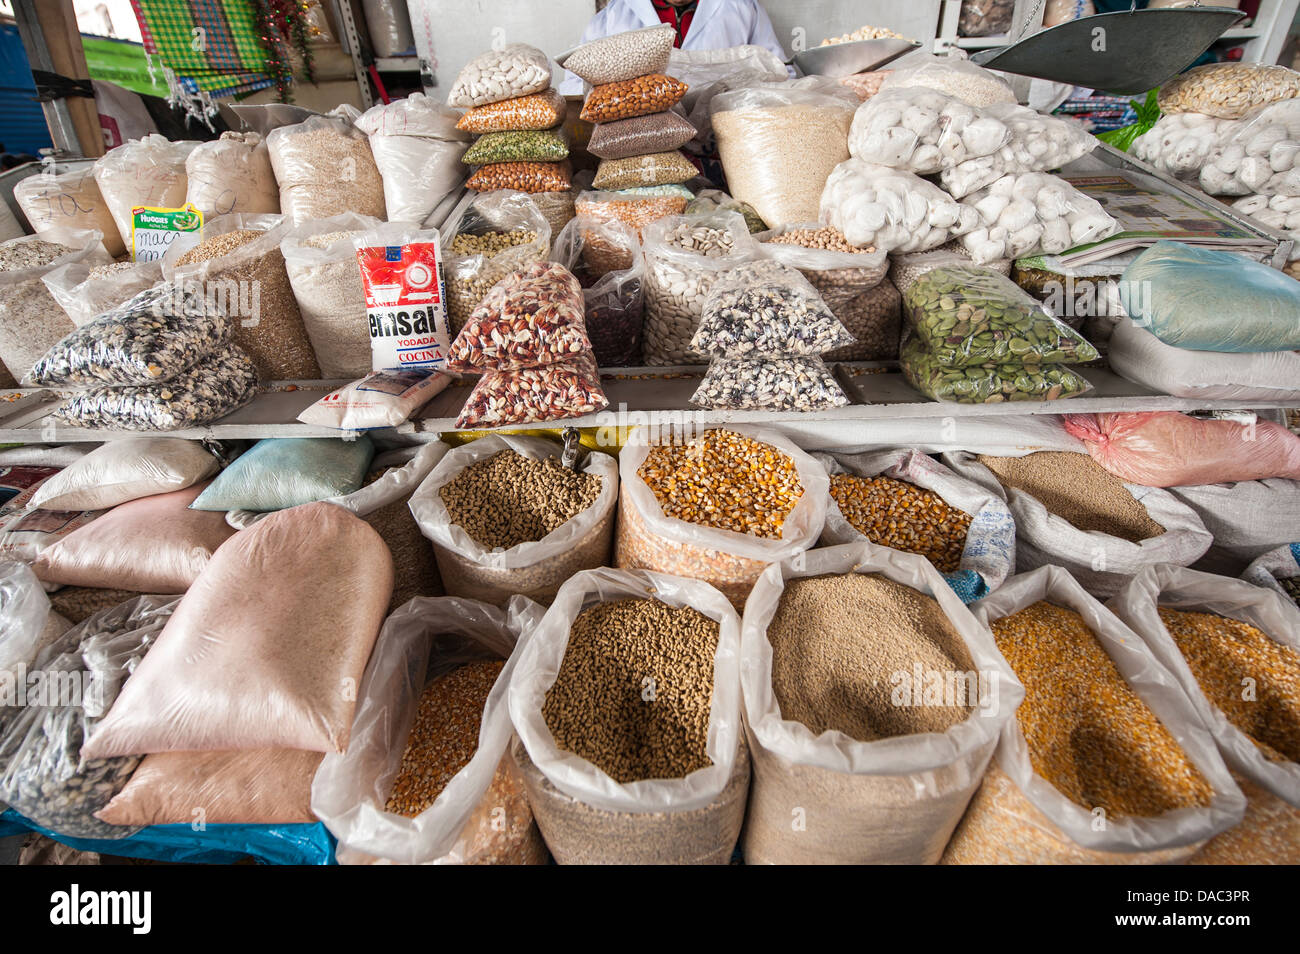 Sacs de grain de maïs haricots produisent des marchandises sèches stall shop vendeur dans le marché local, Cusco, Pérou. Banque D'Images